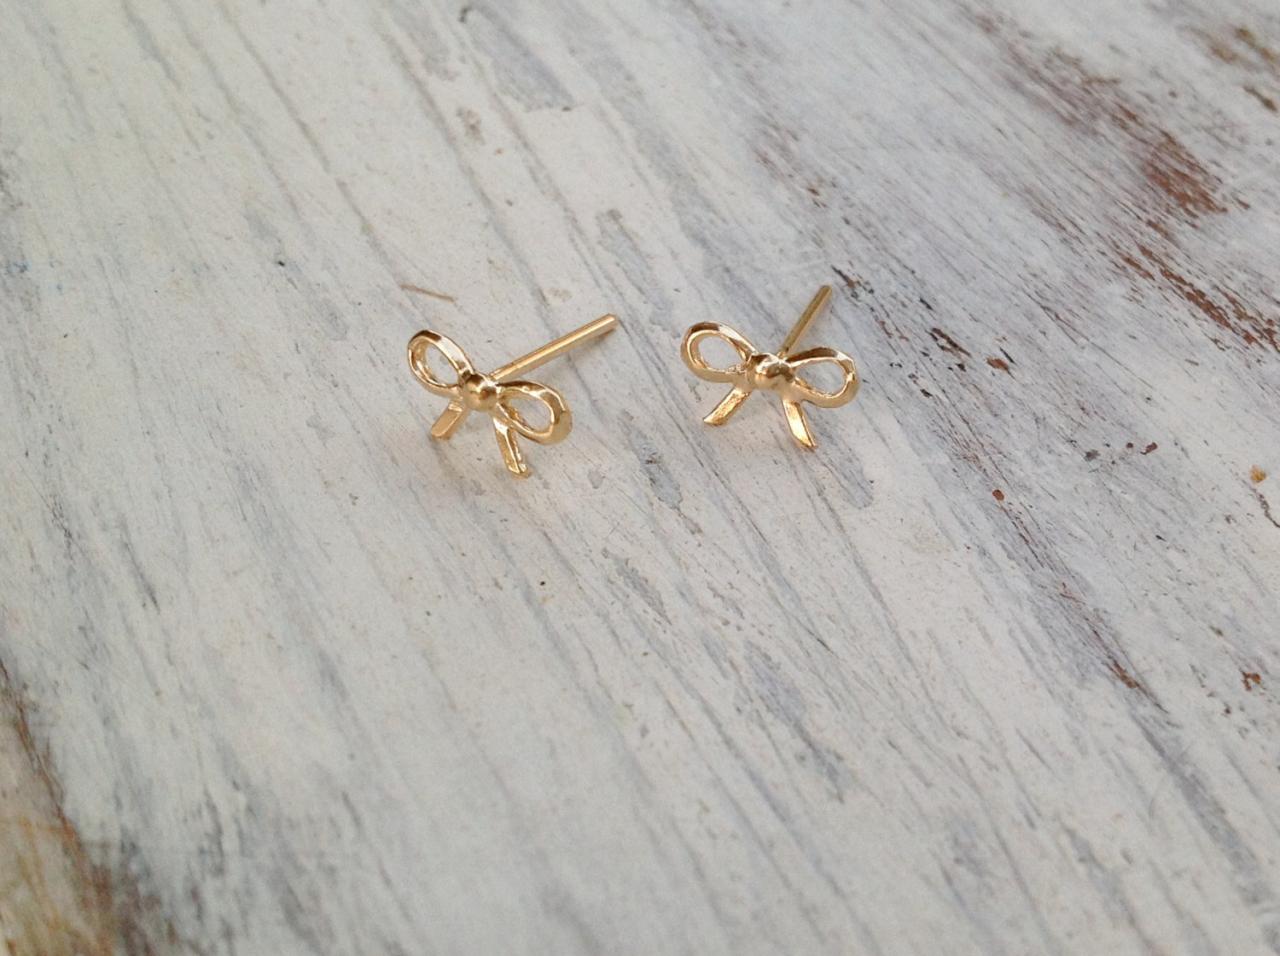 Gold earrings, stud earrings, bow earrings, , gold filled stud earrings, petite earrings, gold studs, everyday earrings -4401